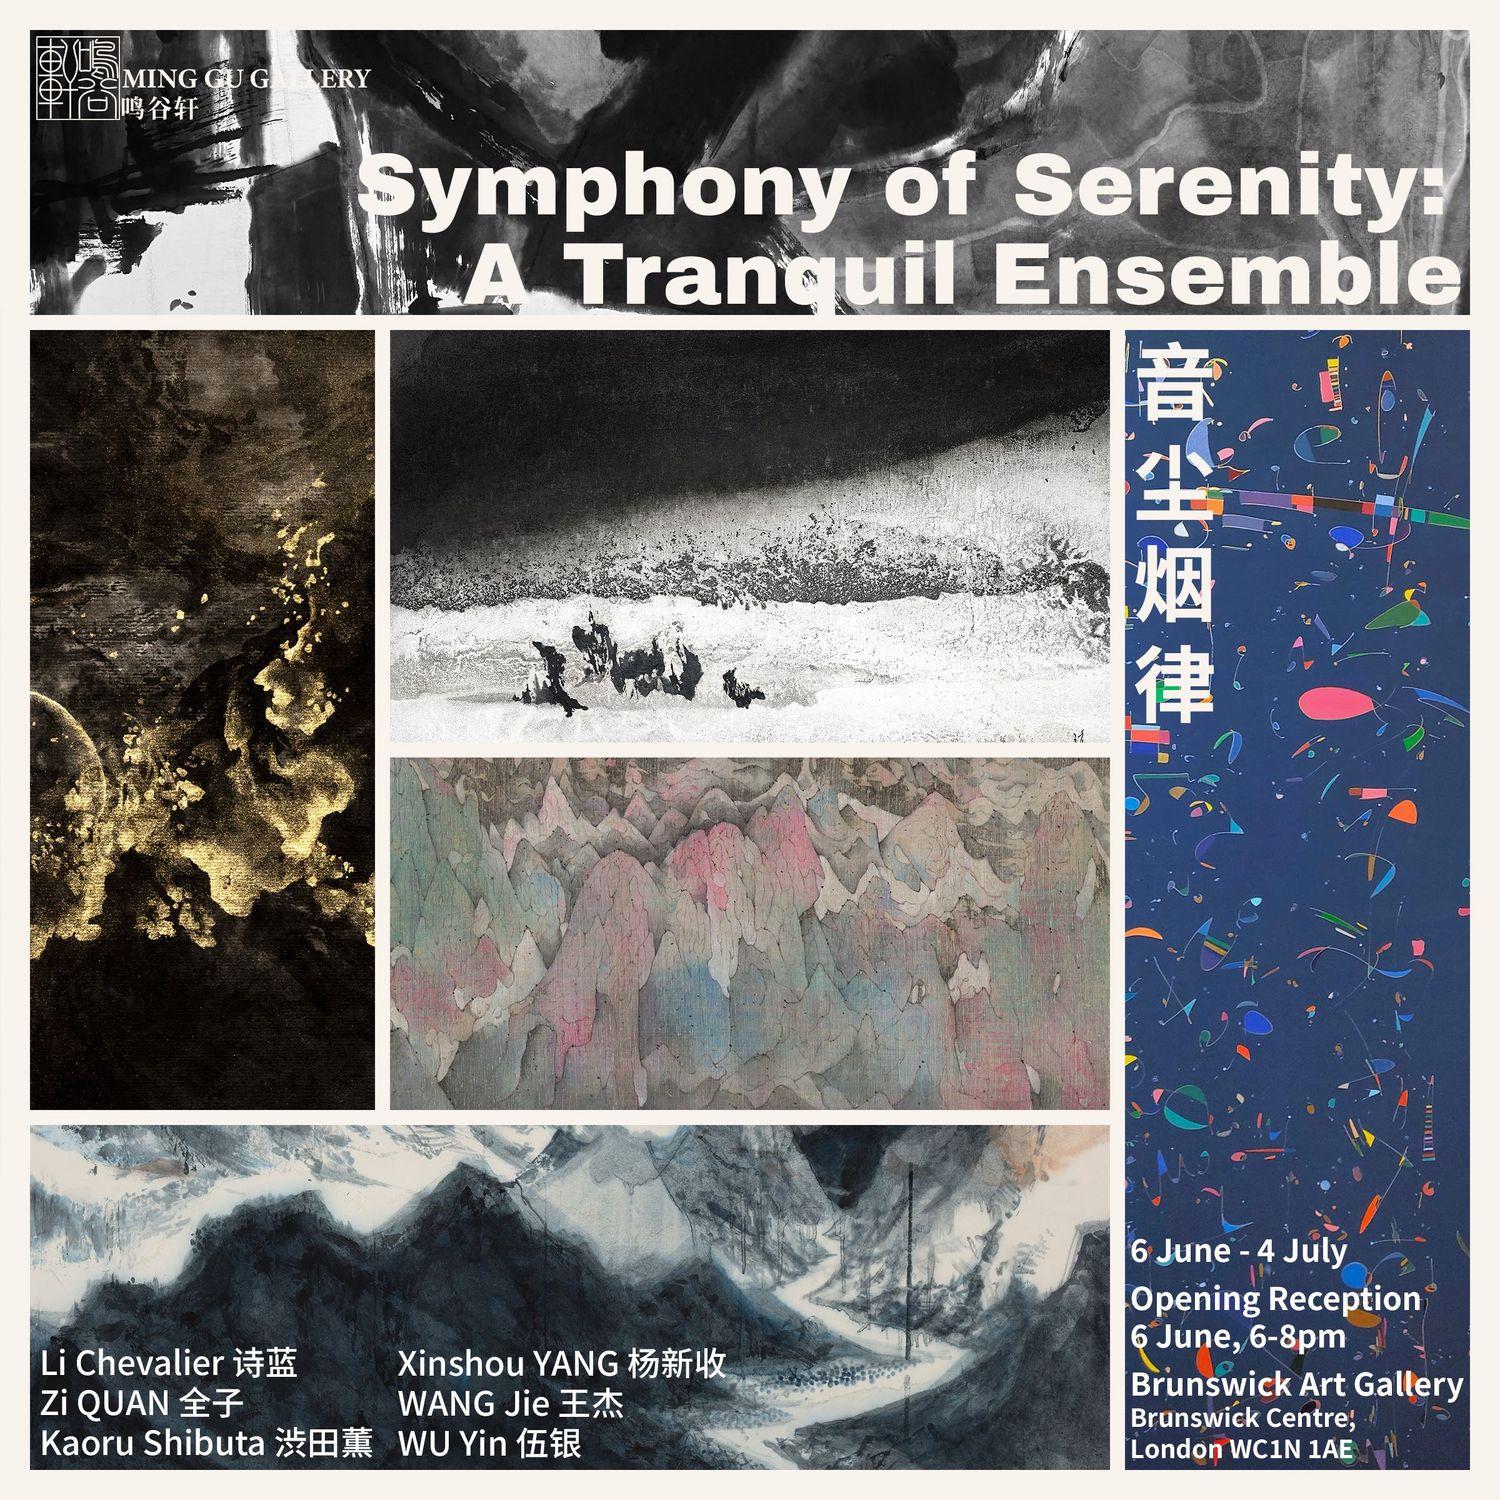 Symphony of Serenity: A Tranquil Ensemble  | Li Chevalier, Zi Quan, Kaoru Shibuta, Wu Yin, Wang Jie, Xinshou Yang | Brunswick Art Gallery